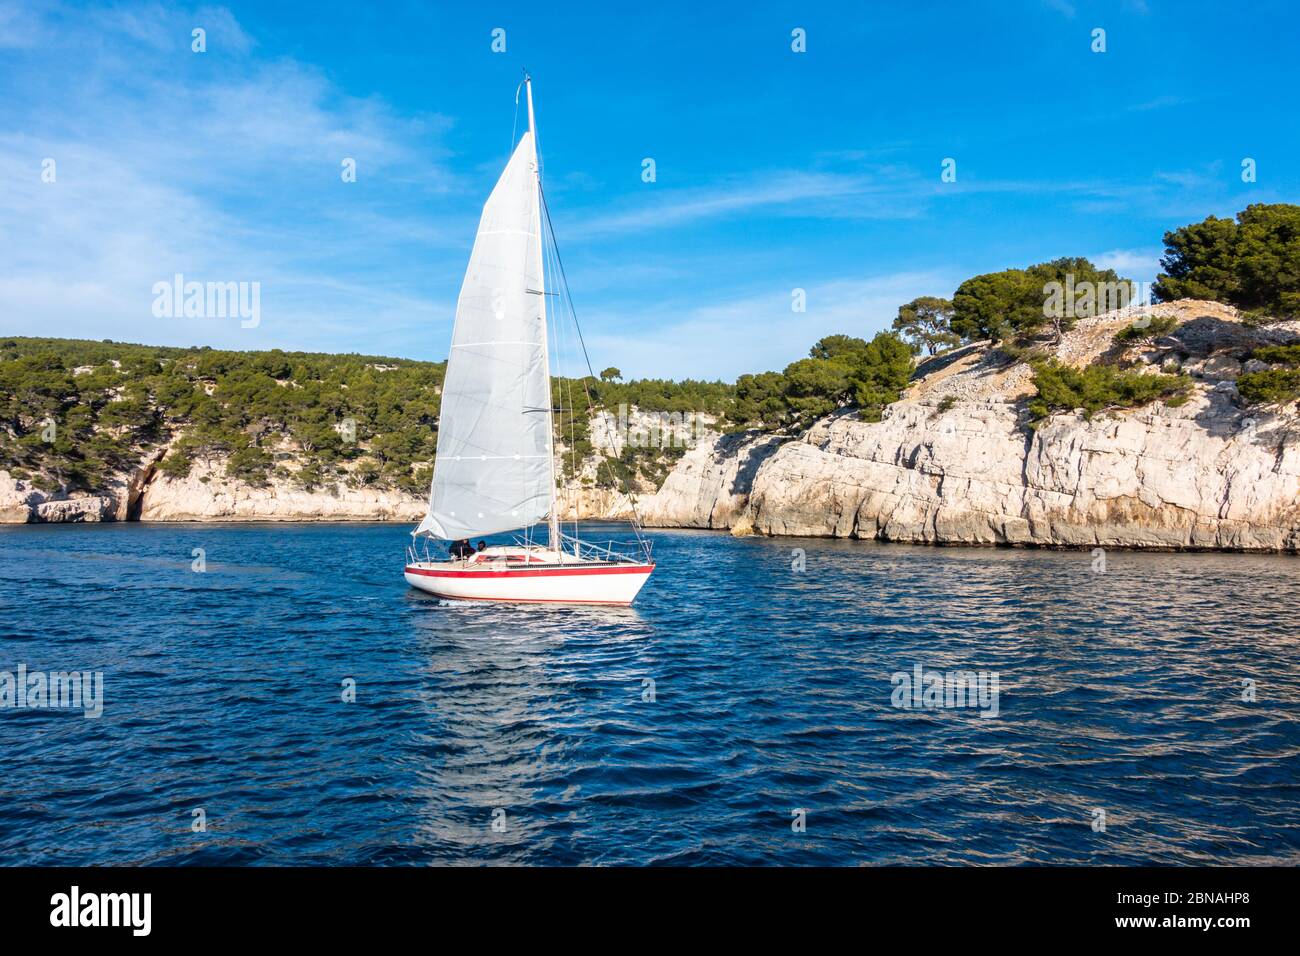 Un voilier naviguant le long de la côte spectaculaire du parc national des Calanques (parc national des Calanques) près de Cassis, France Banque D'Images